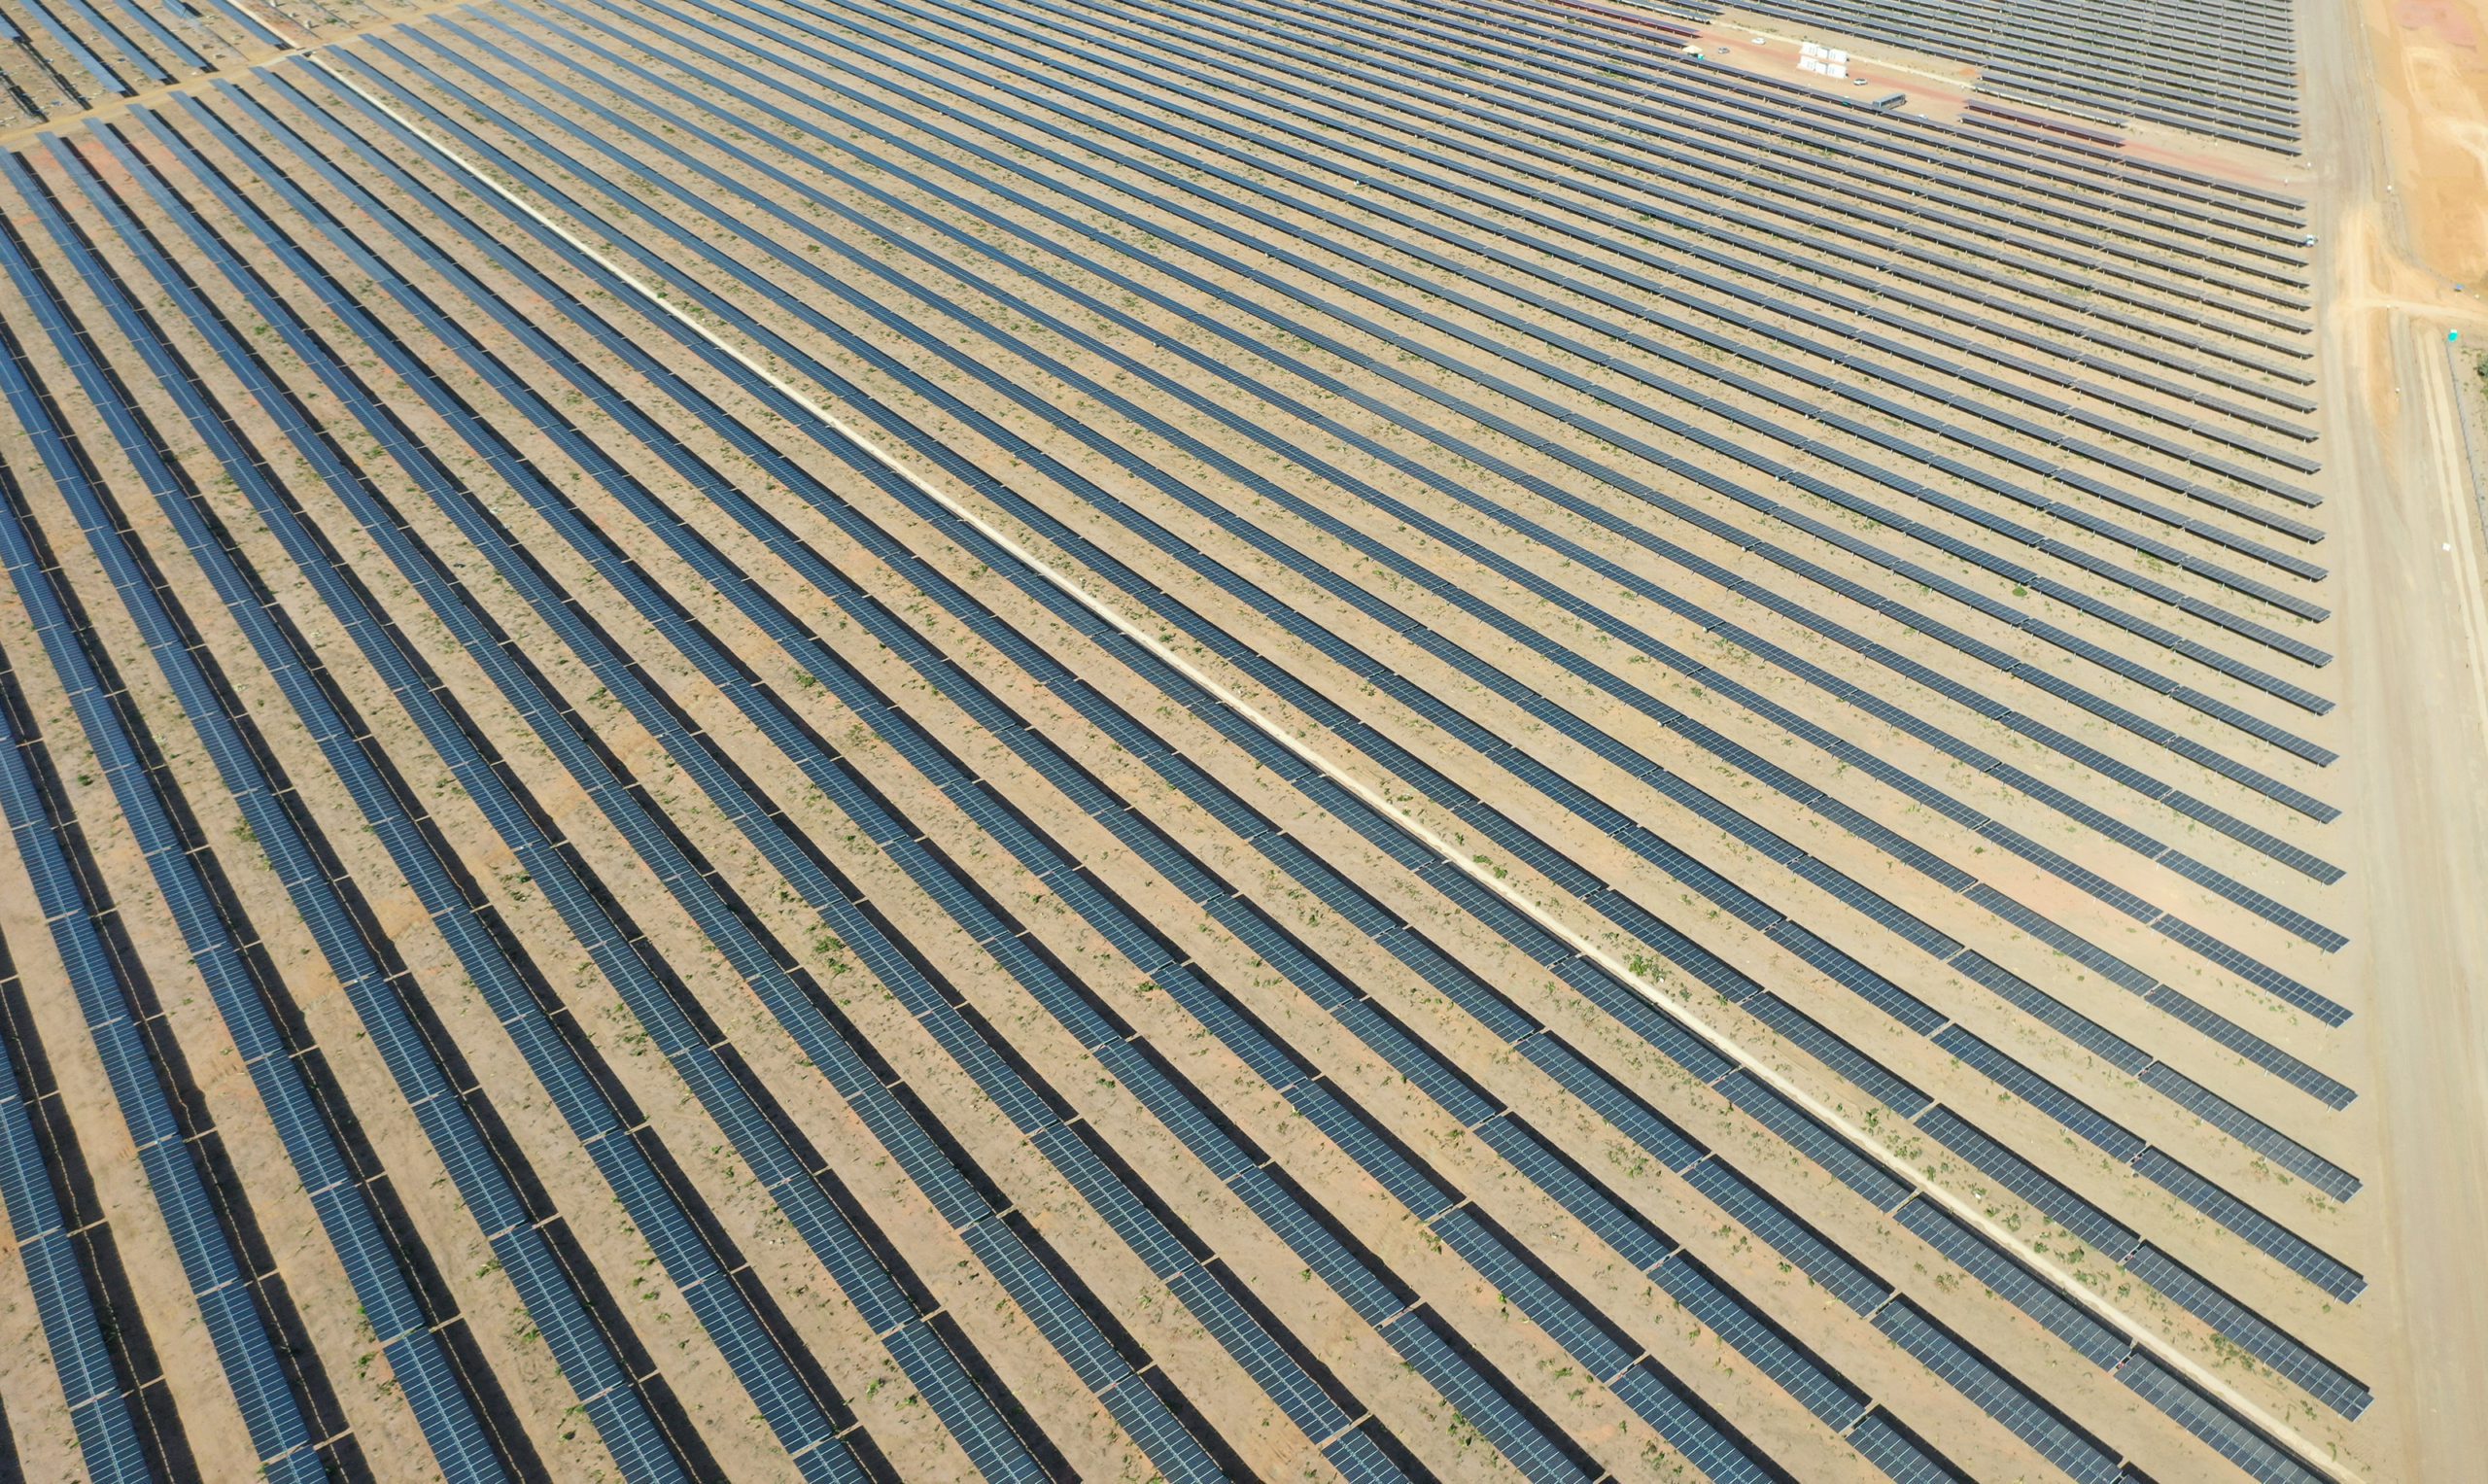 Proyecto fotovoltaico a gran escala construído